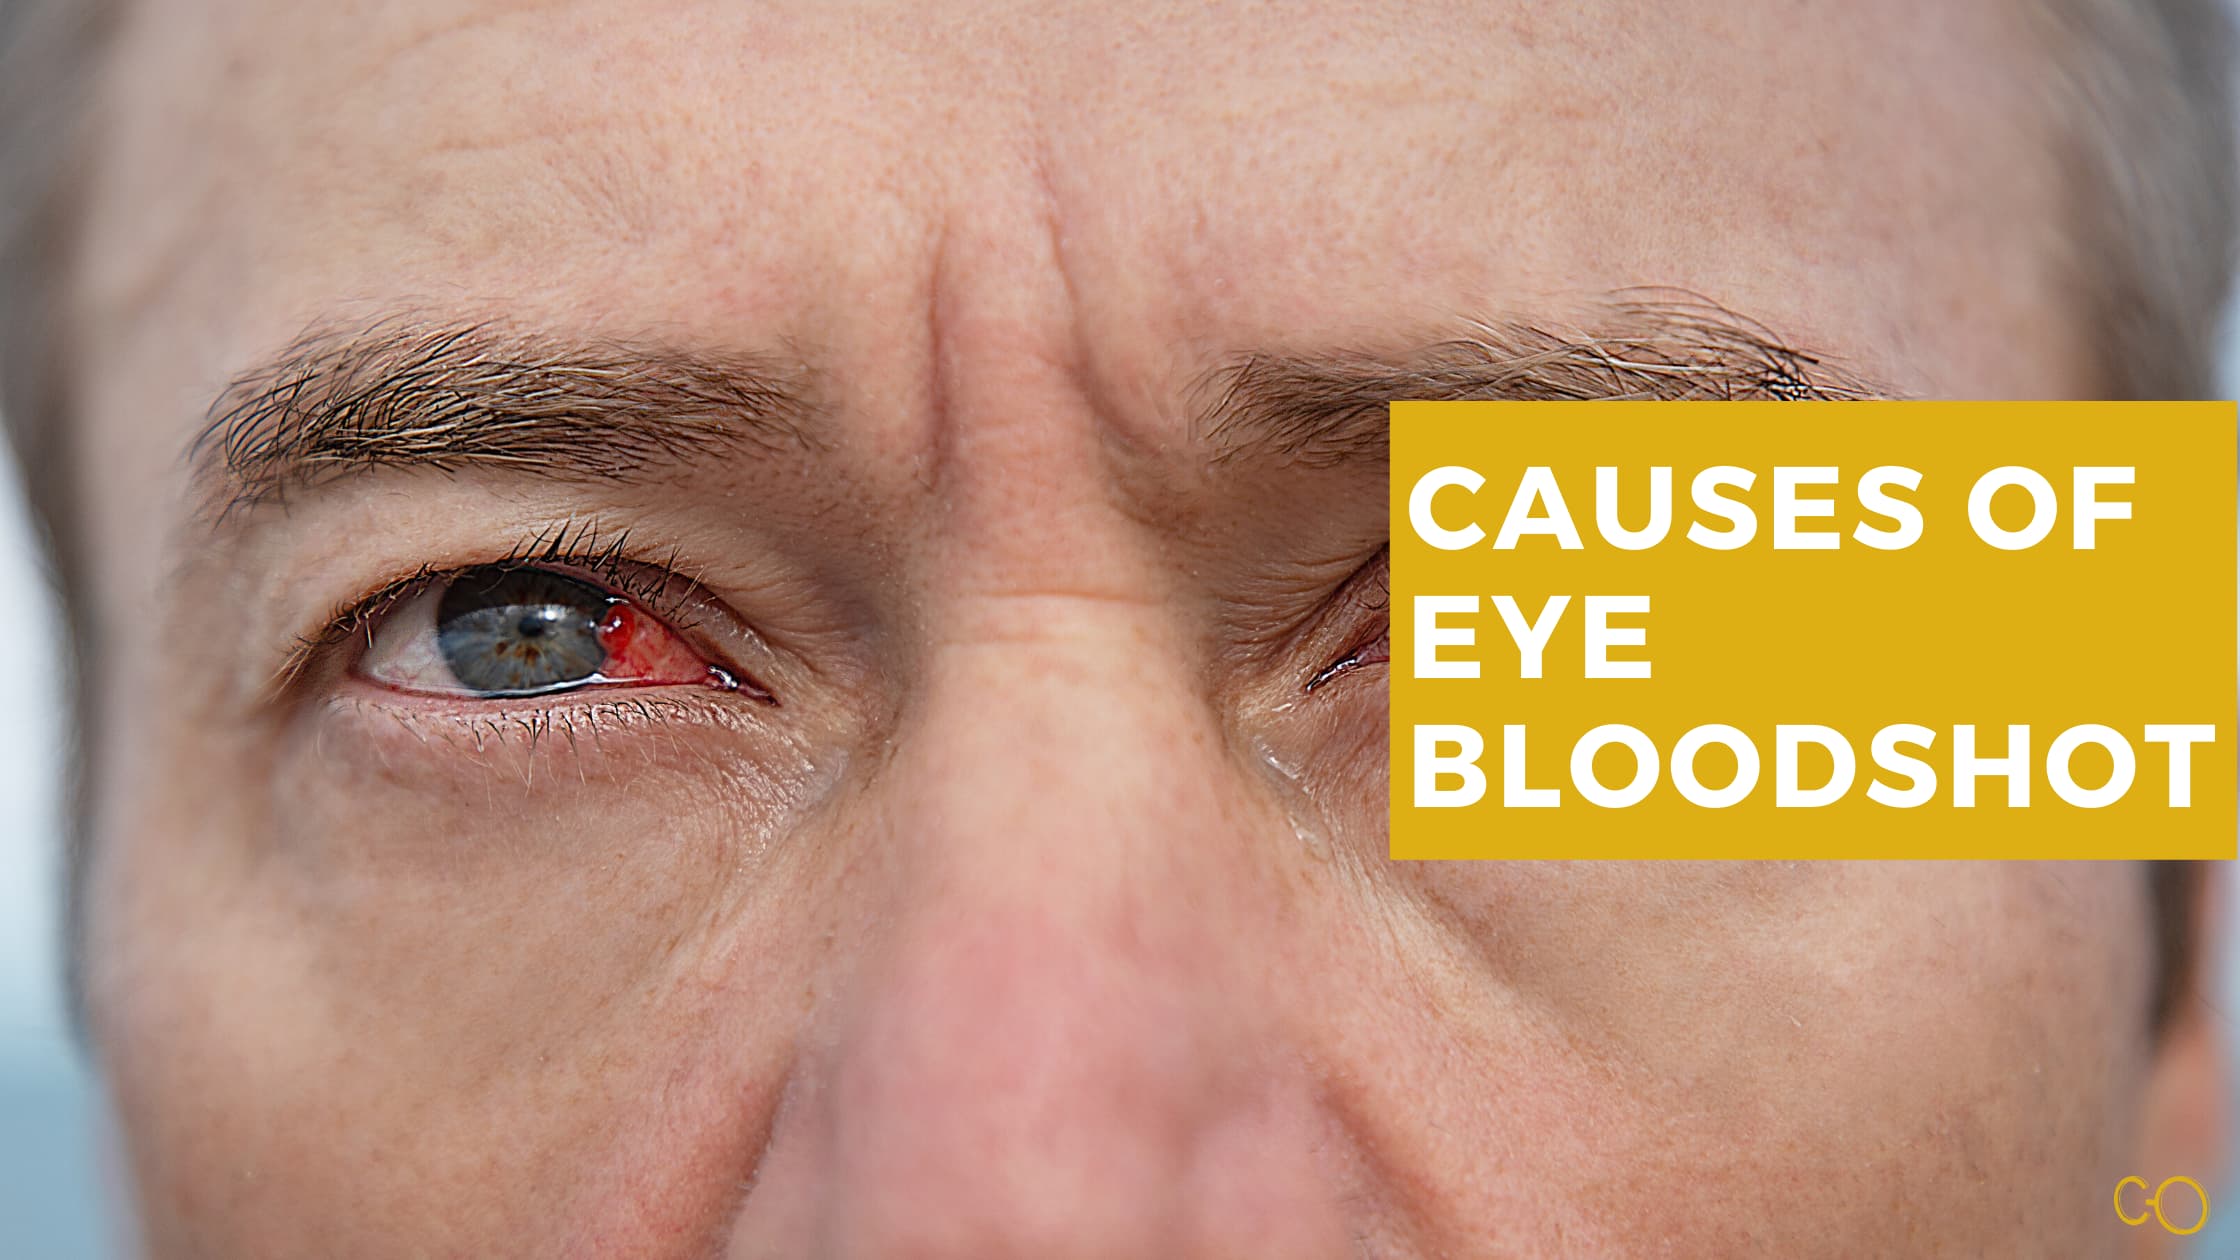 What casues eye bloodshot